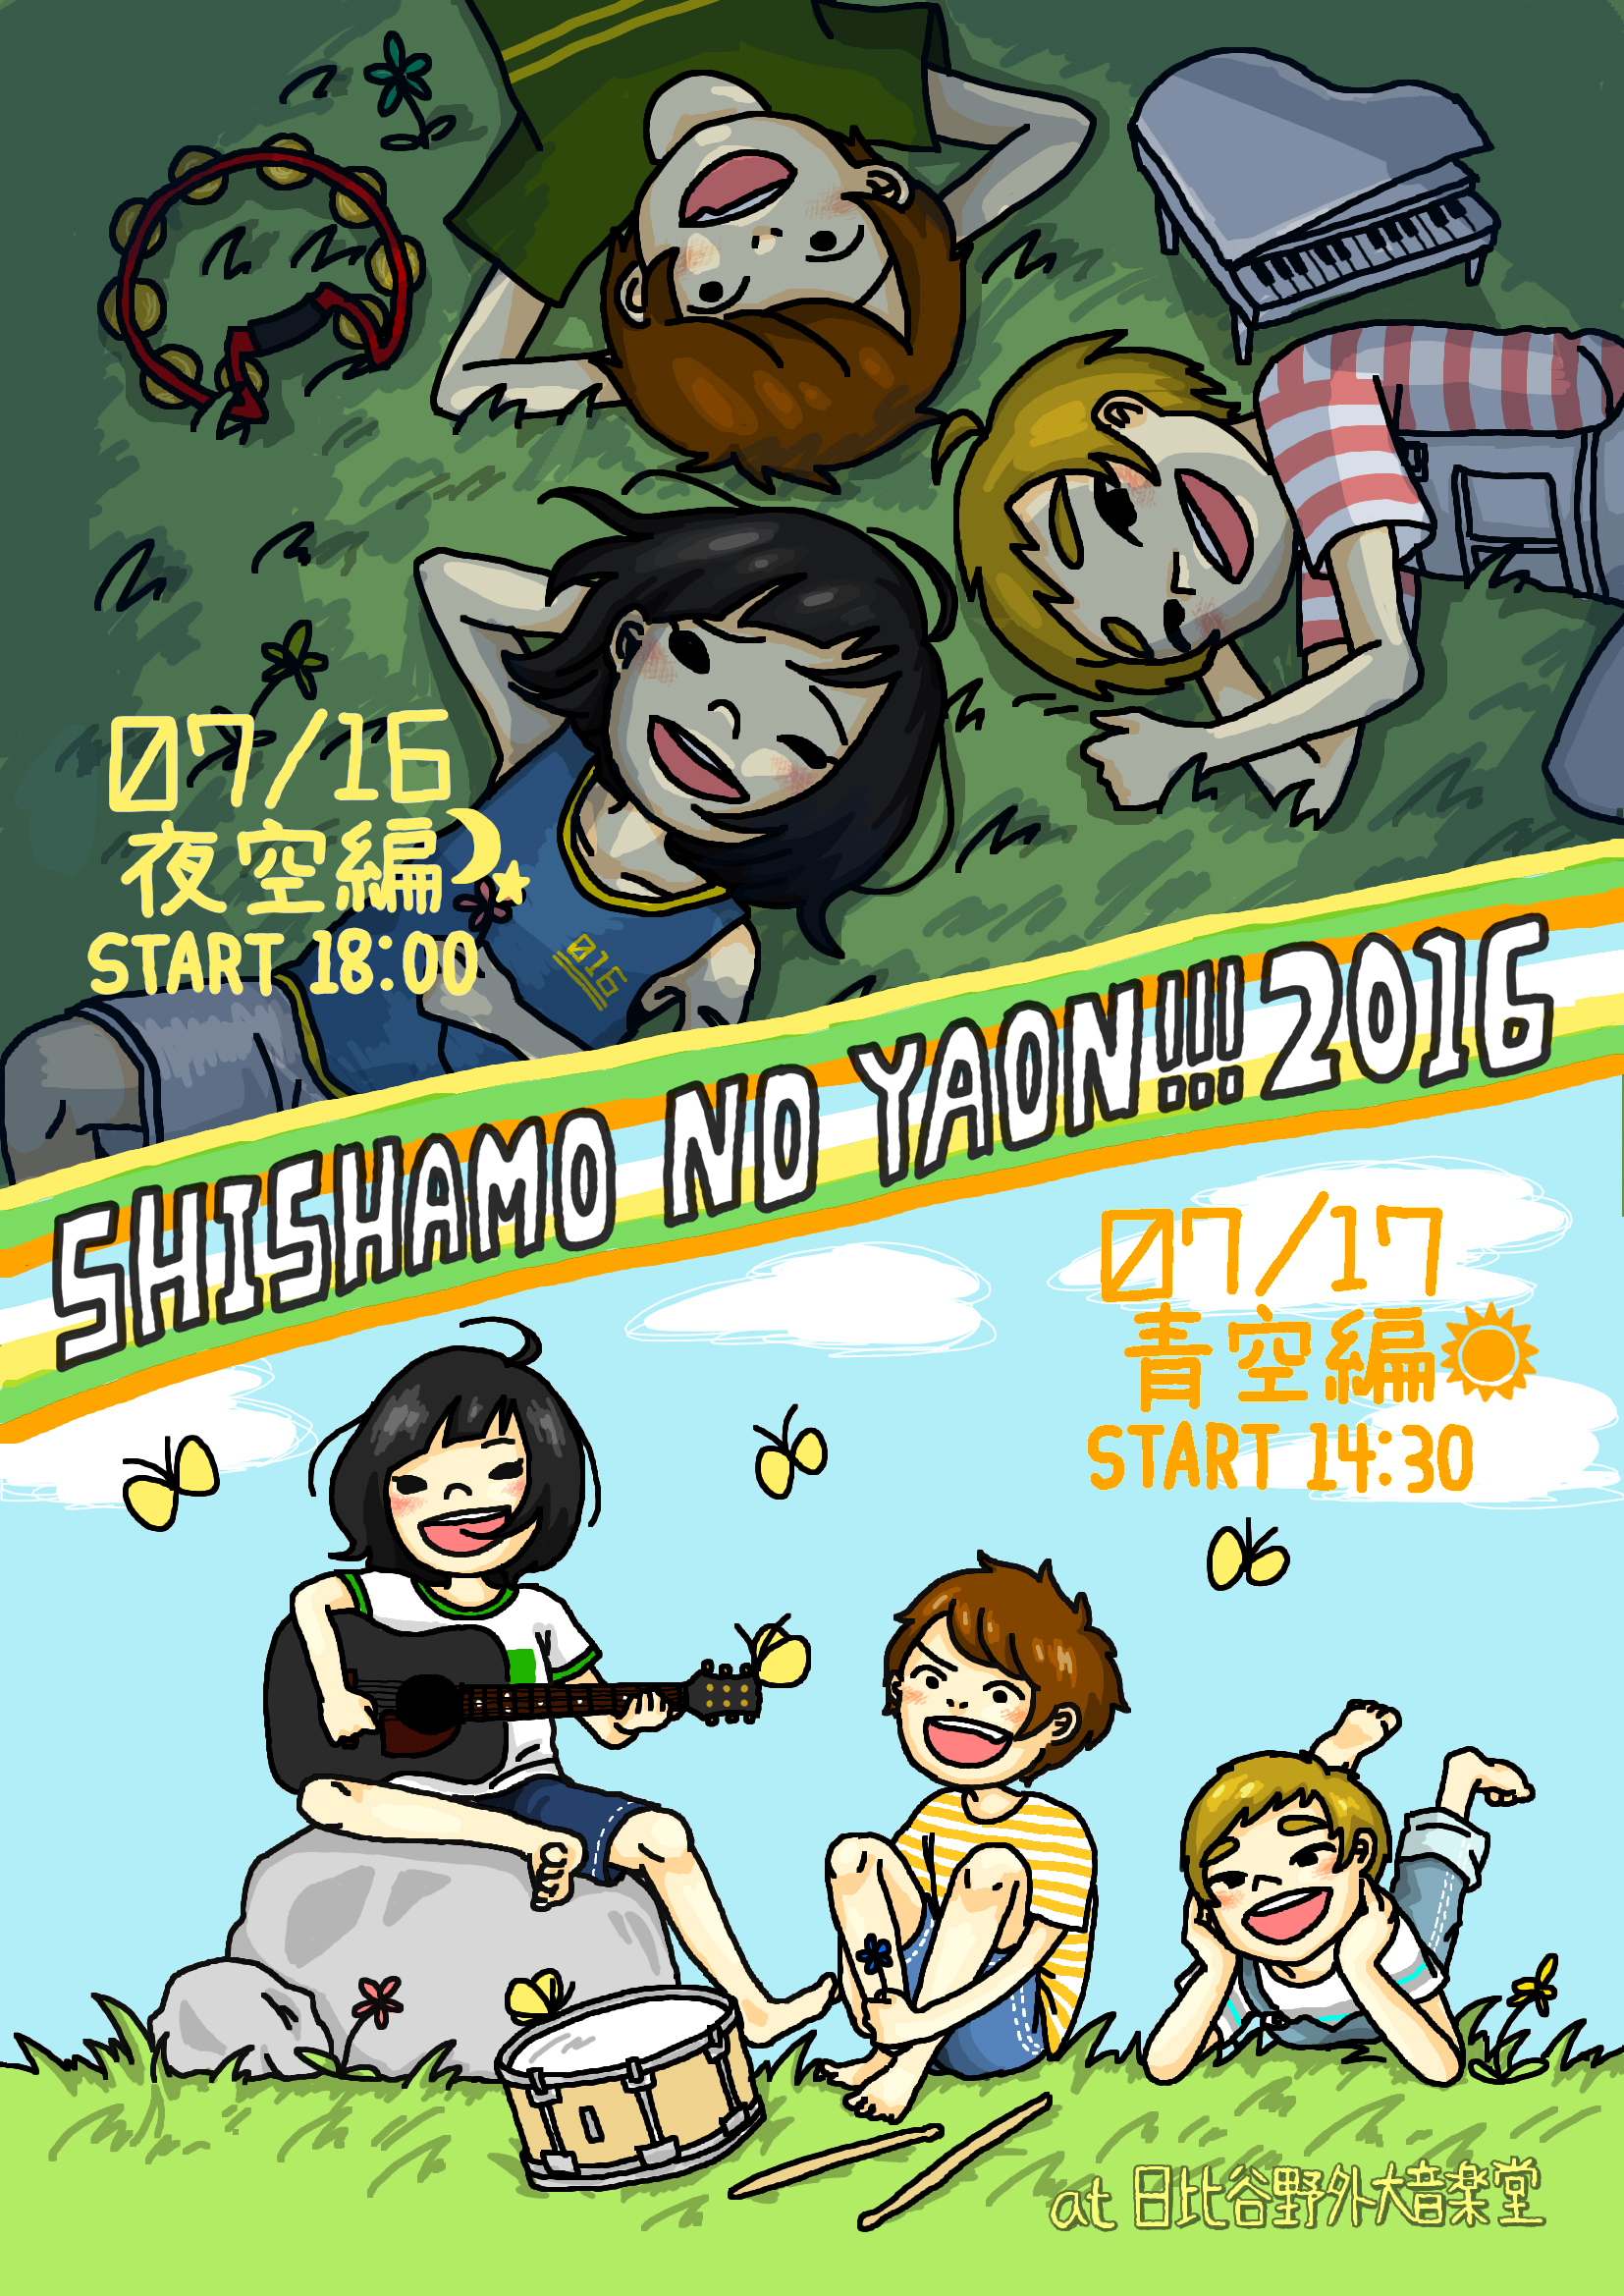 今年の Shishamo No Yaon は日比谷で2days開催 最新ニュース Fanplus Music